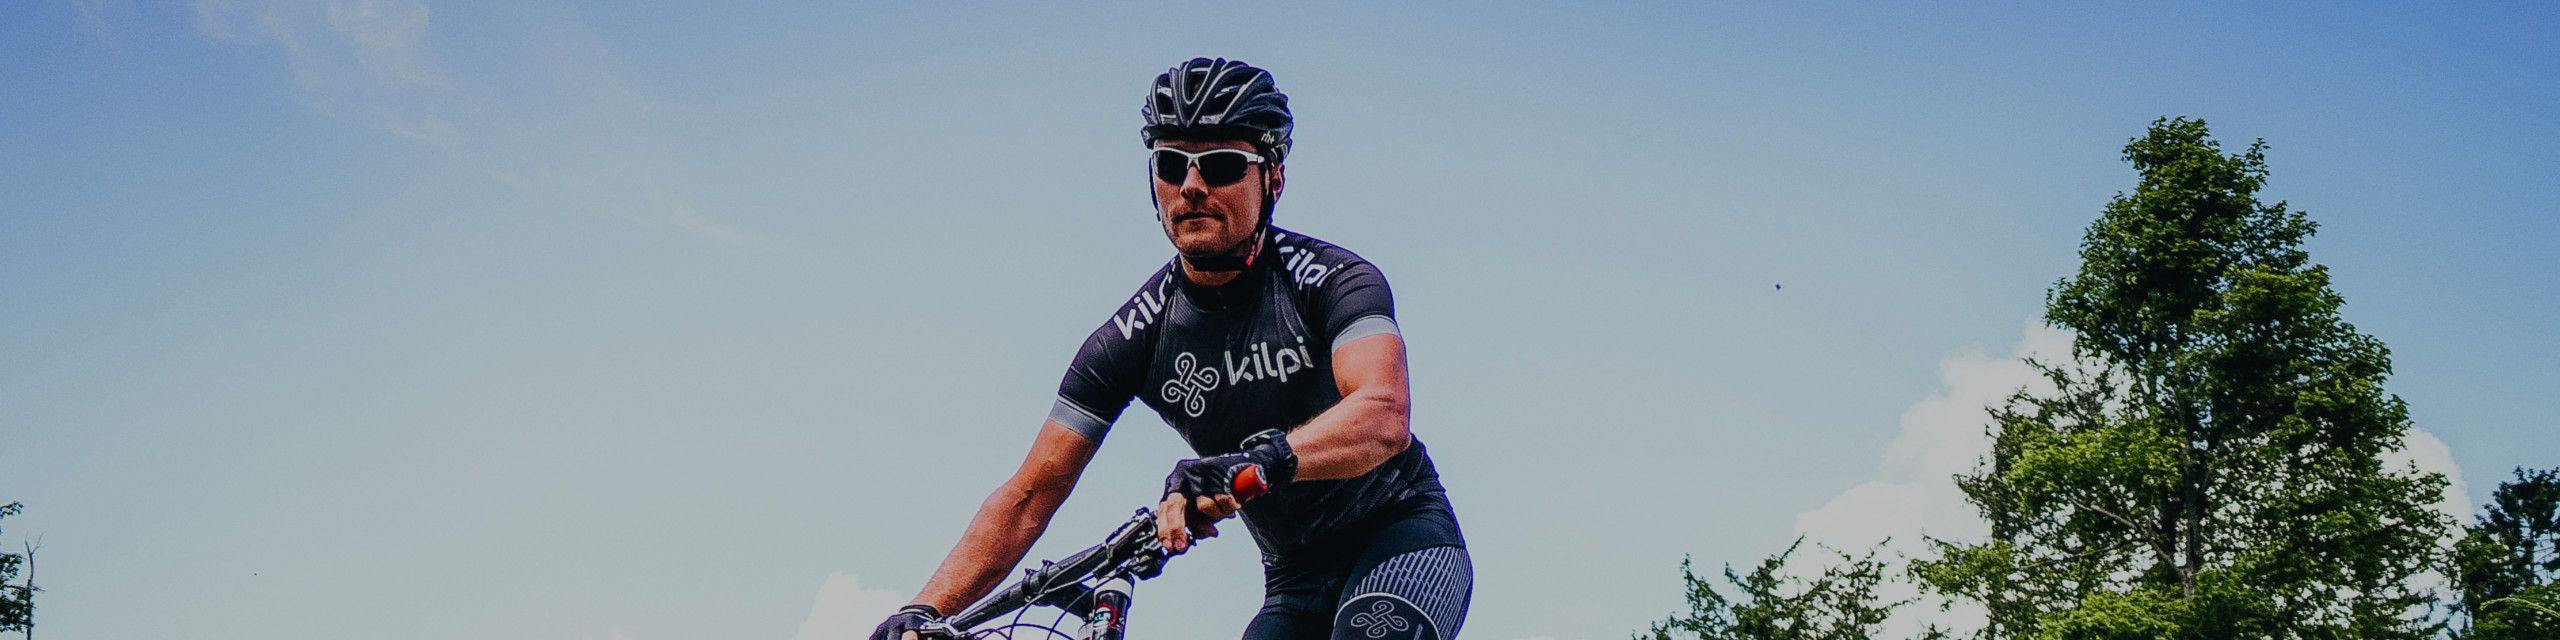 lægemidlet Postnummer korroderer Cykelsolbriller - Find de bedste solbriller til cykling - Skisport.dk